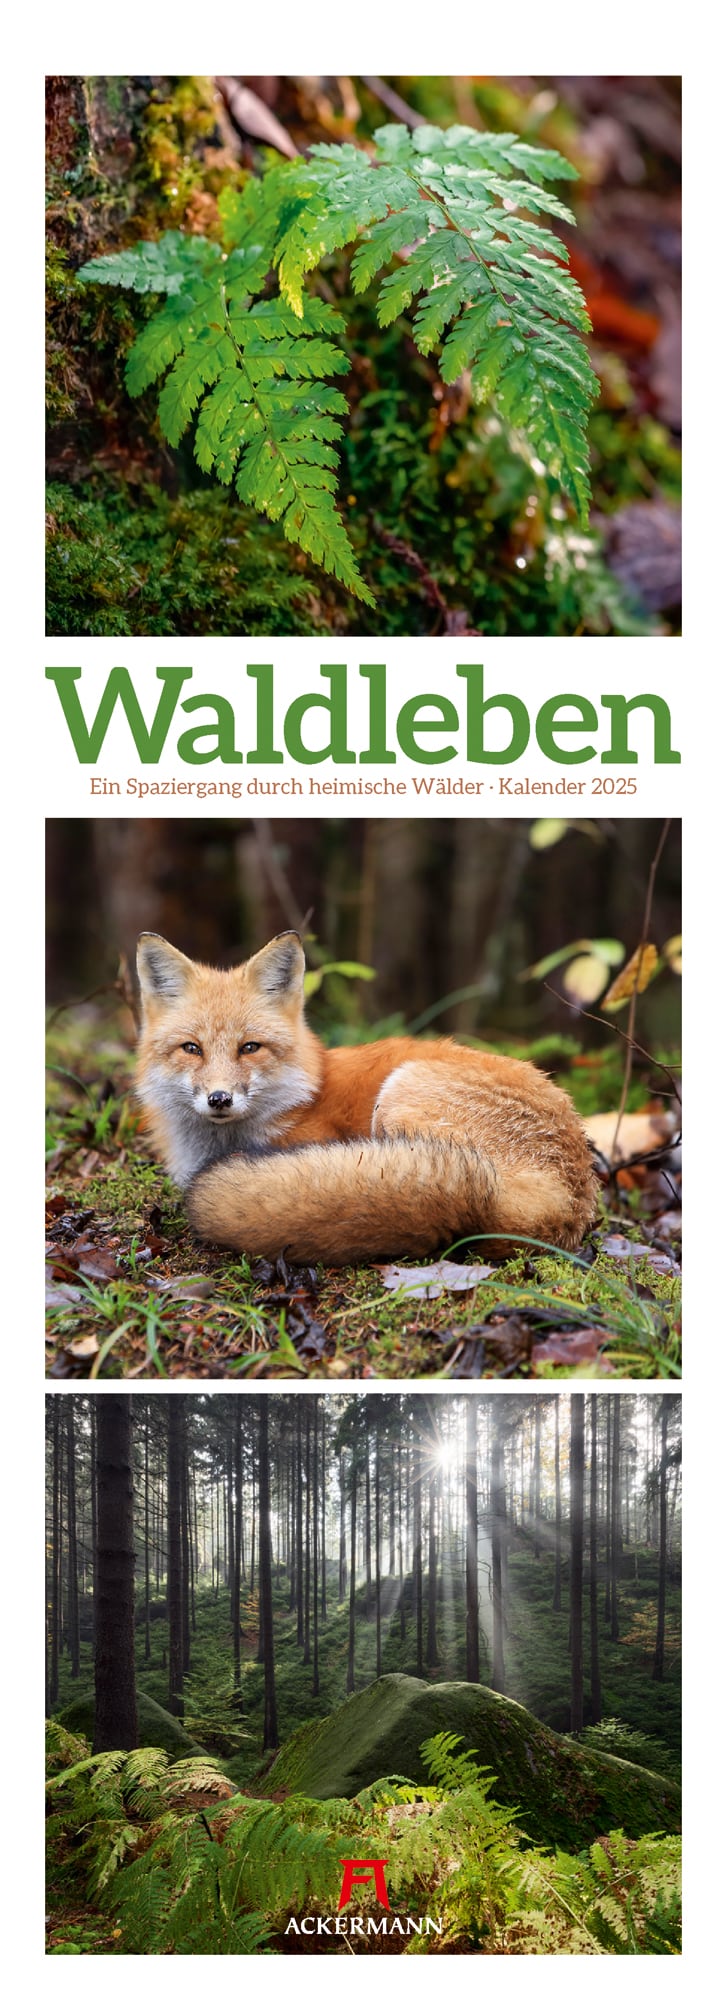 Ackermann Kalender Waldleben 2025 - Titelblatt